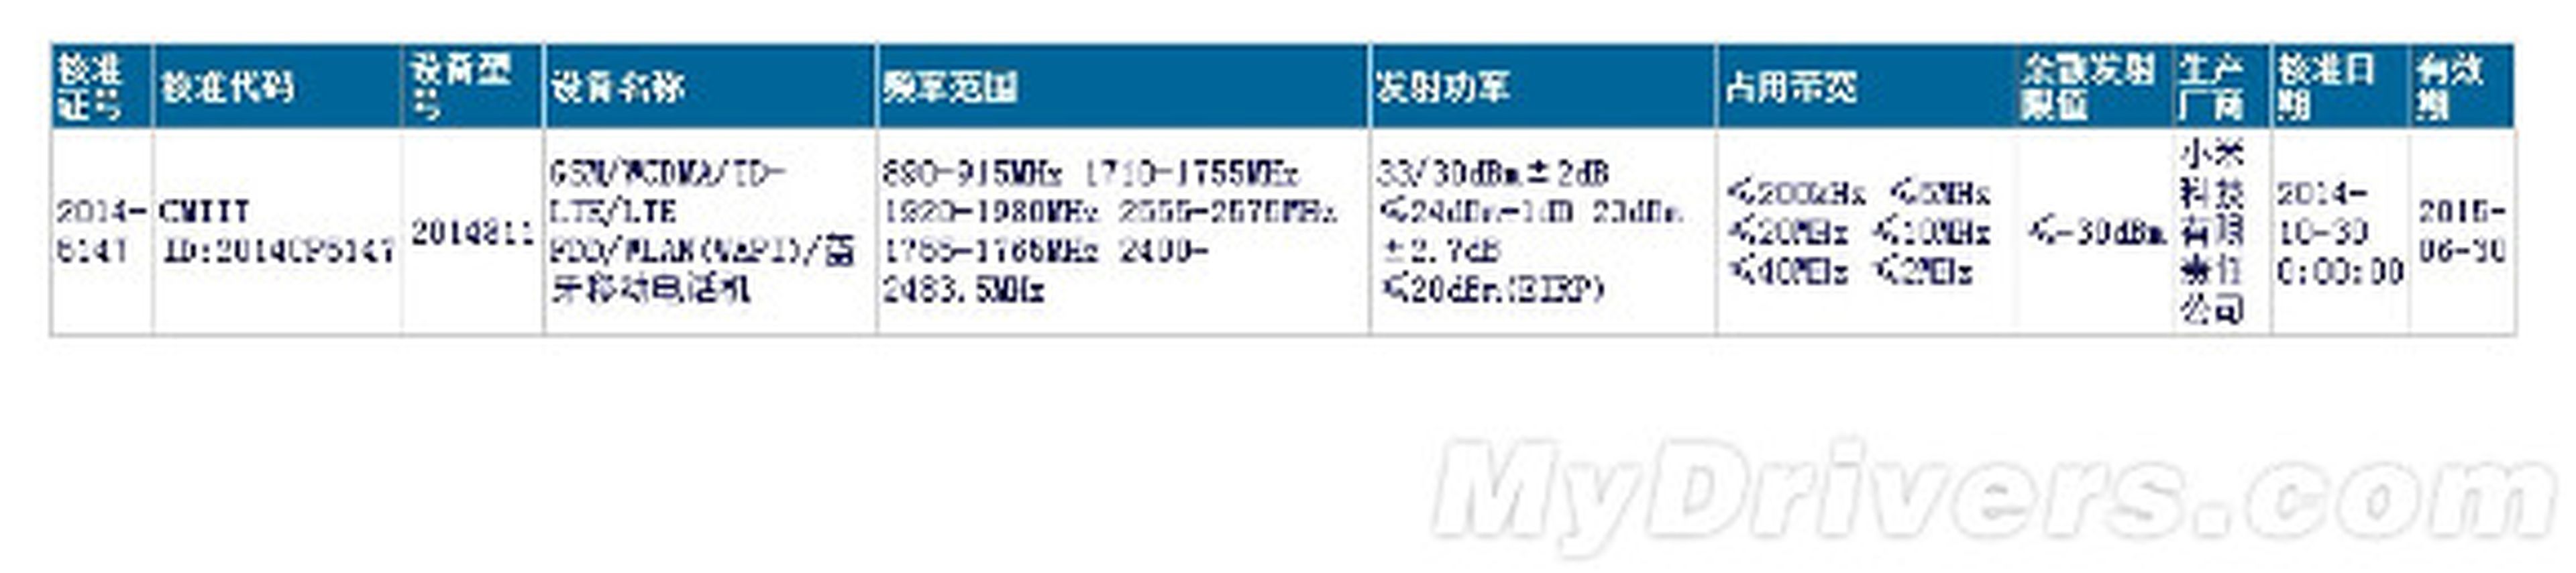 Certificación china de tablet Xiaomi